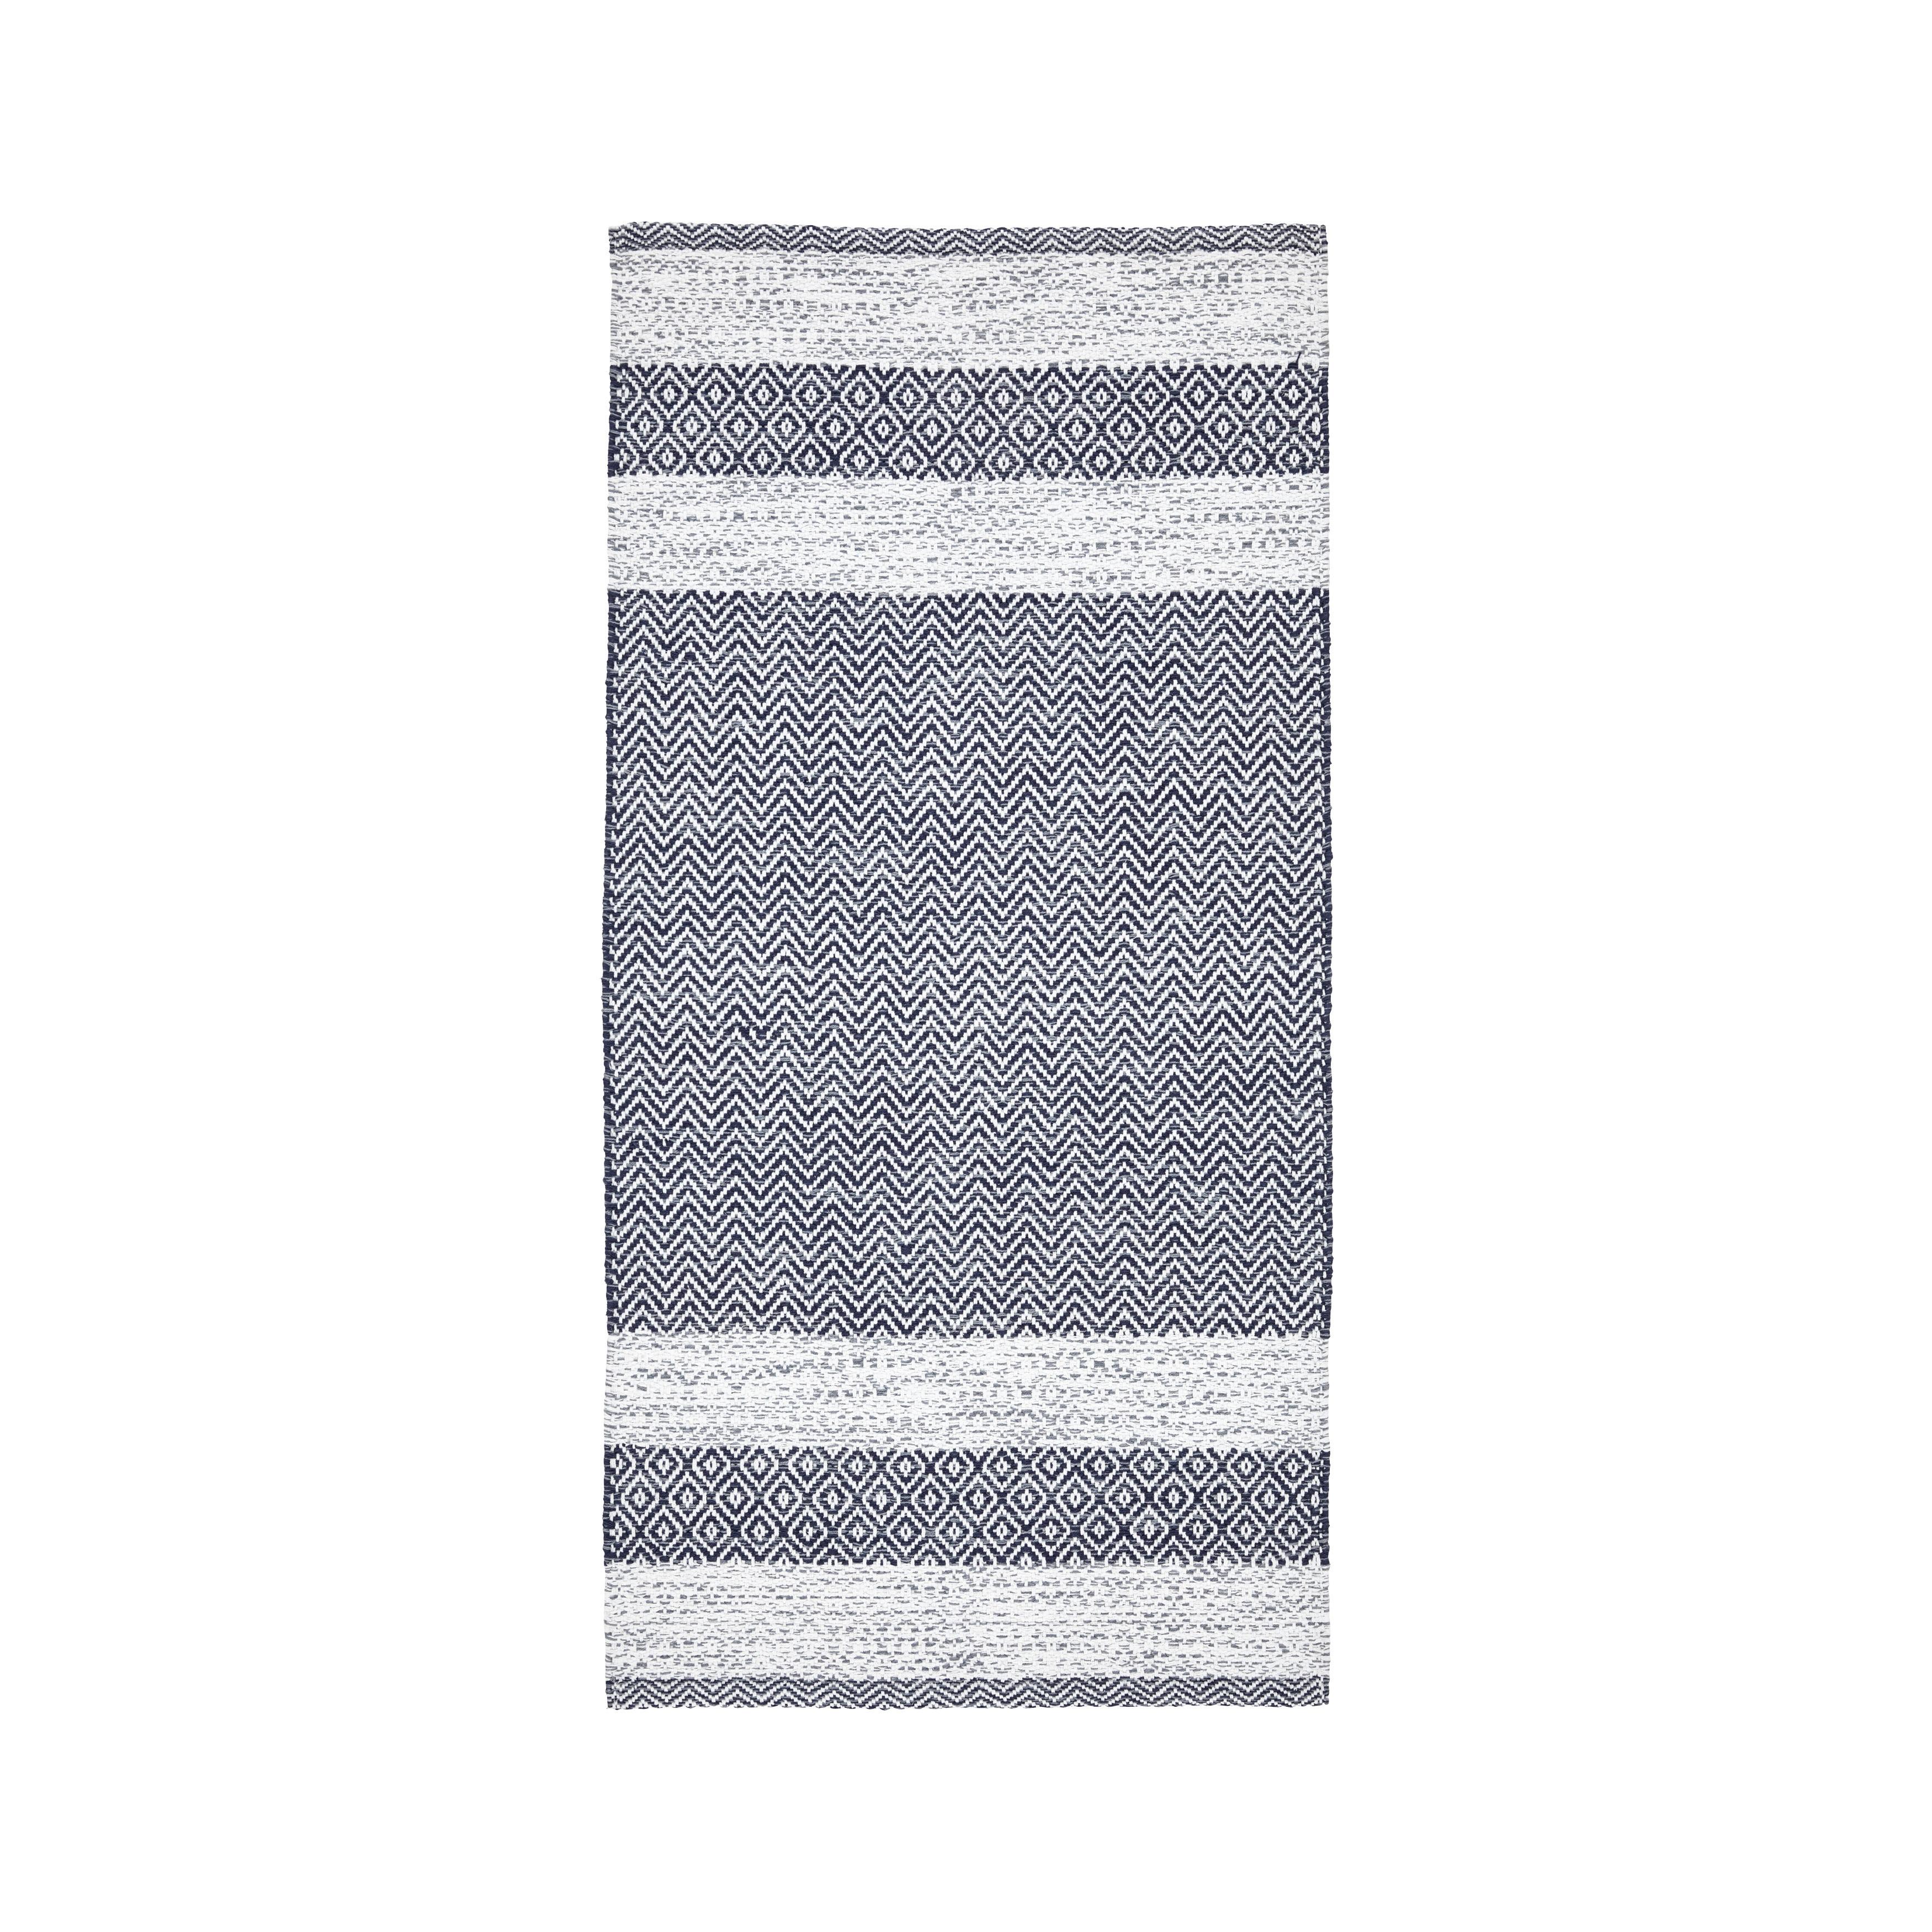 Covor țesut de mână ELISA - alb/gri albastru, Modern, textil (60/120cm) - Modern Living